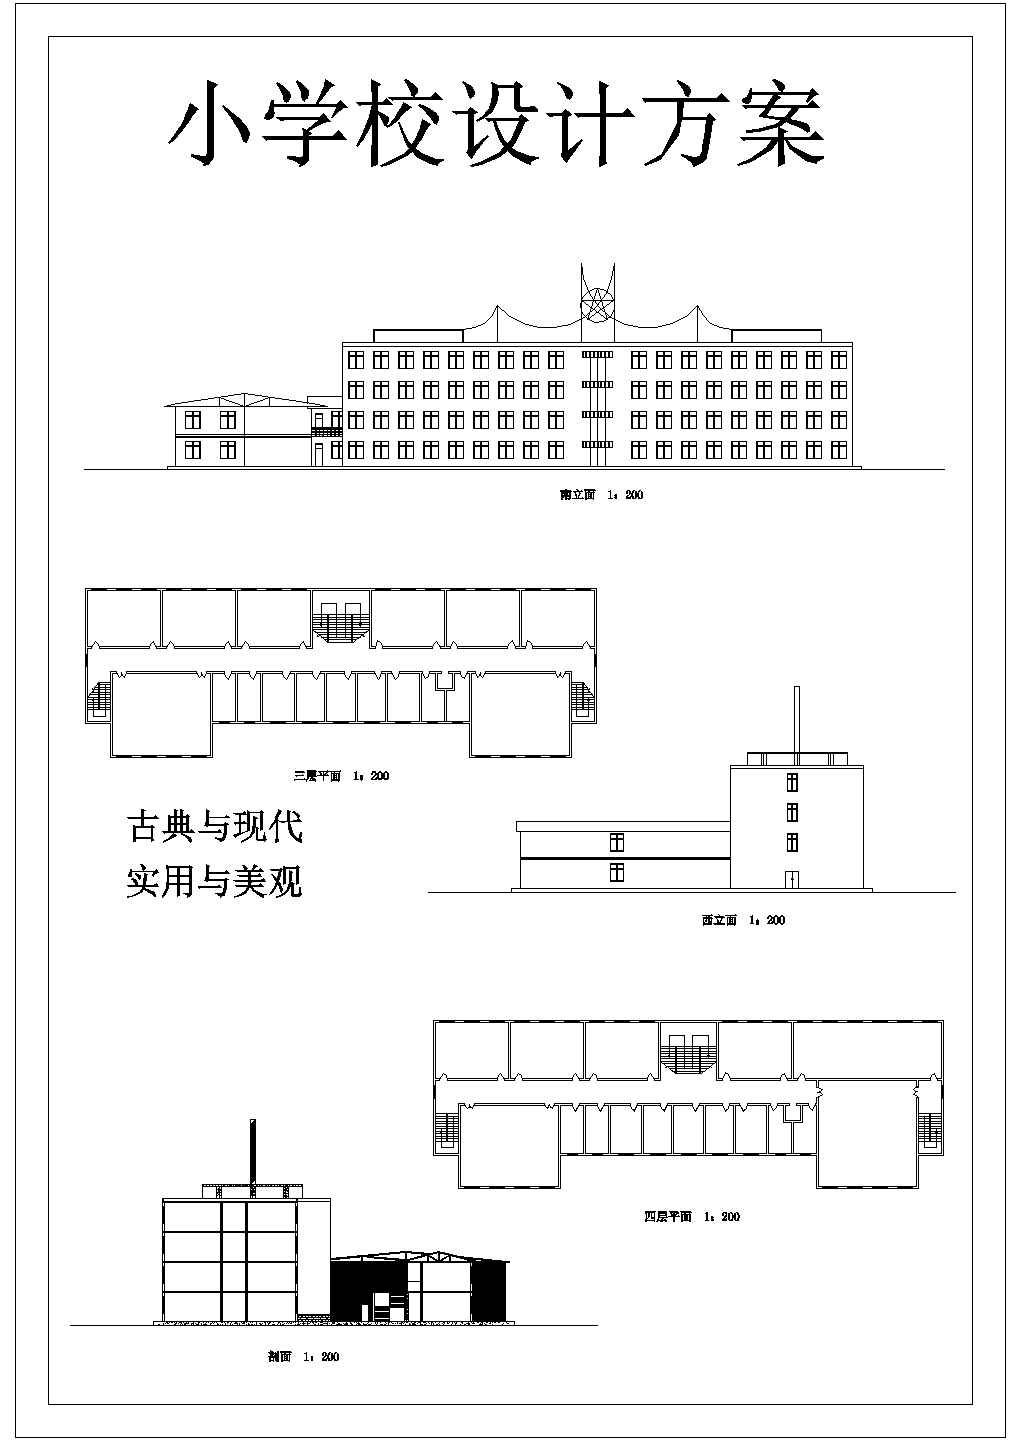 【江苏】某地区小学初步建筑设计方案图纸